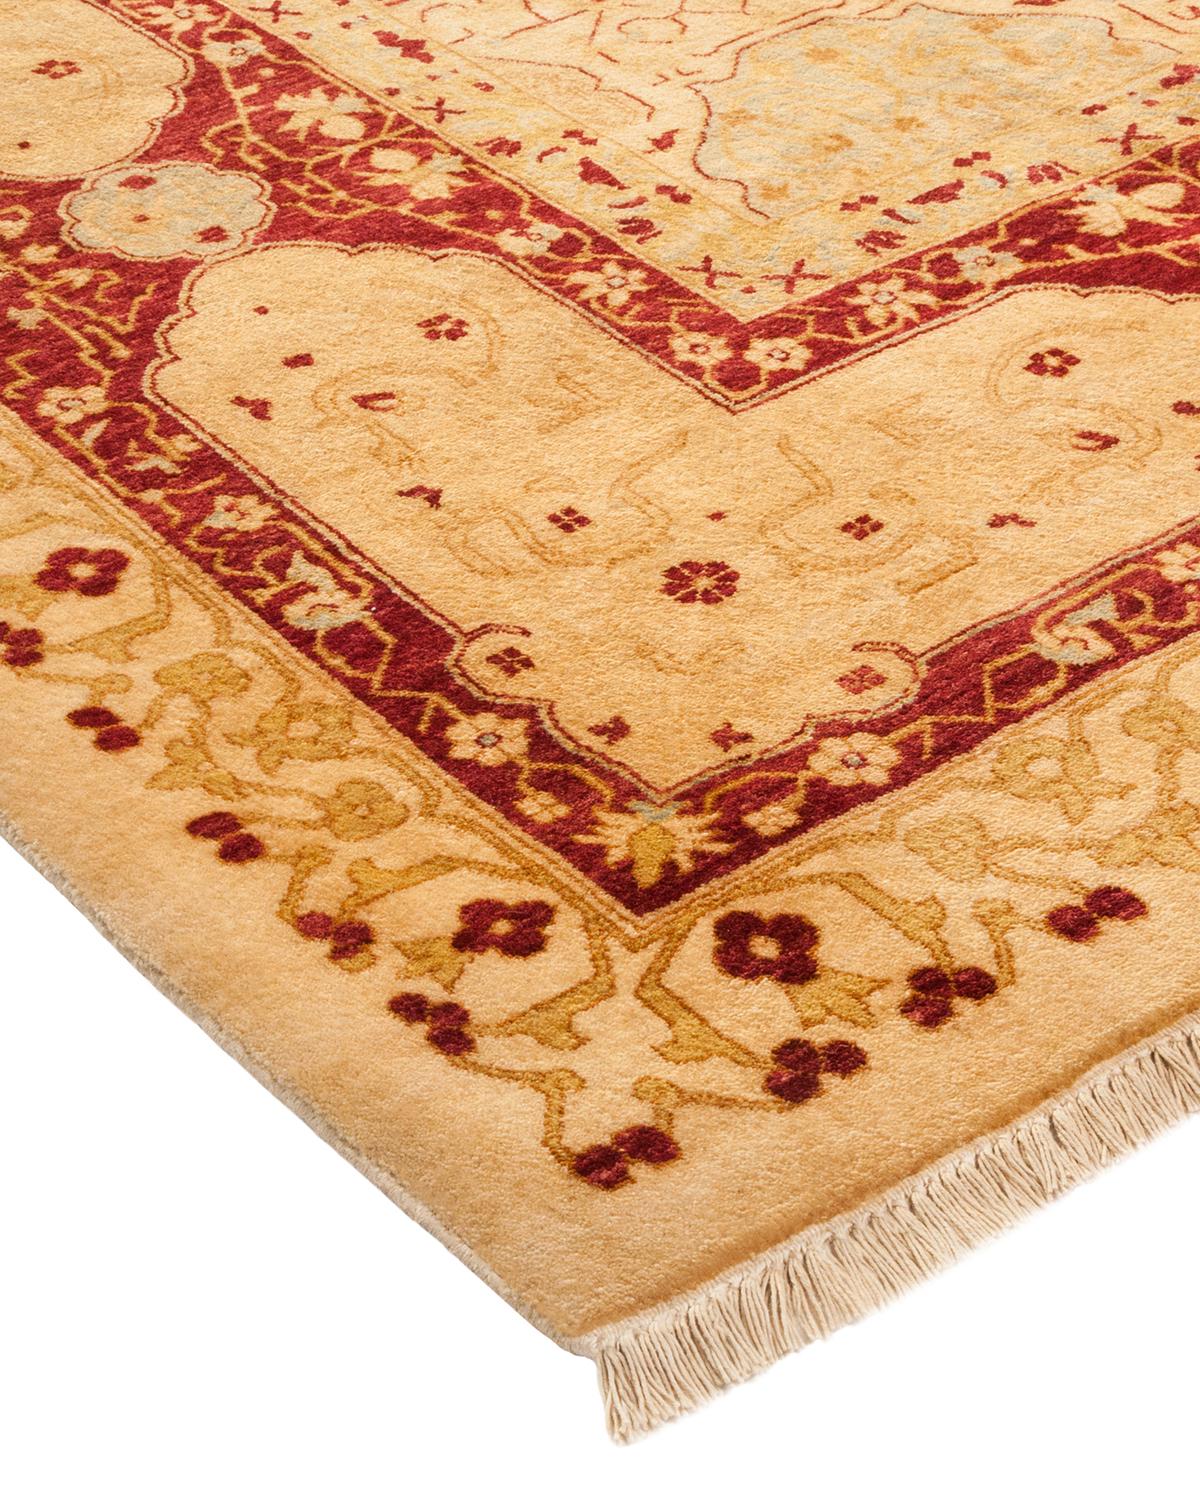 Avec leurs palettes discrètes et leurs motifs en relief, les tapis de la collection Mogul apporteront une sophistication intemporelle à toutes les pièces. Influencés par un éventail de motifs turcs, indiens et persans, les artisans qui tissent à la